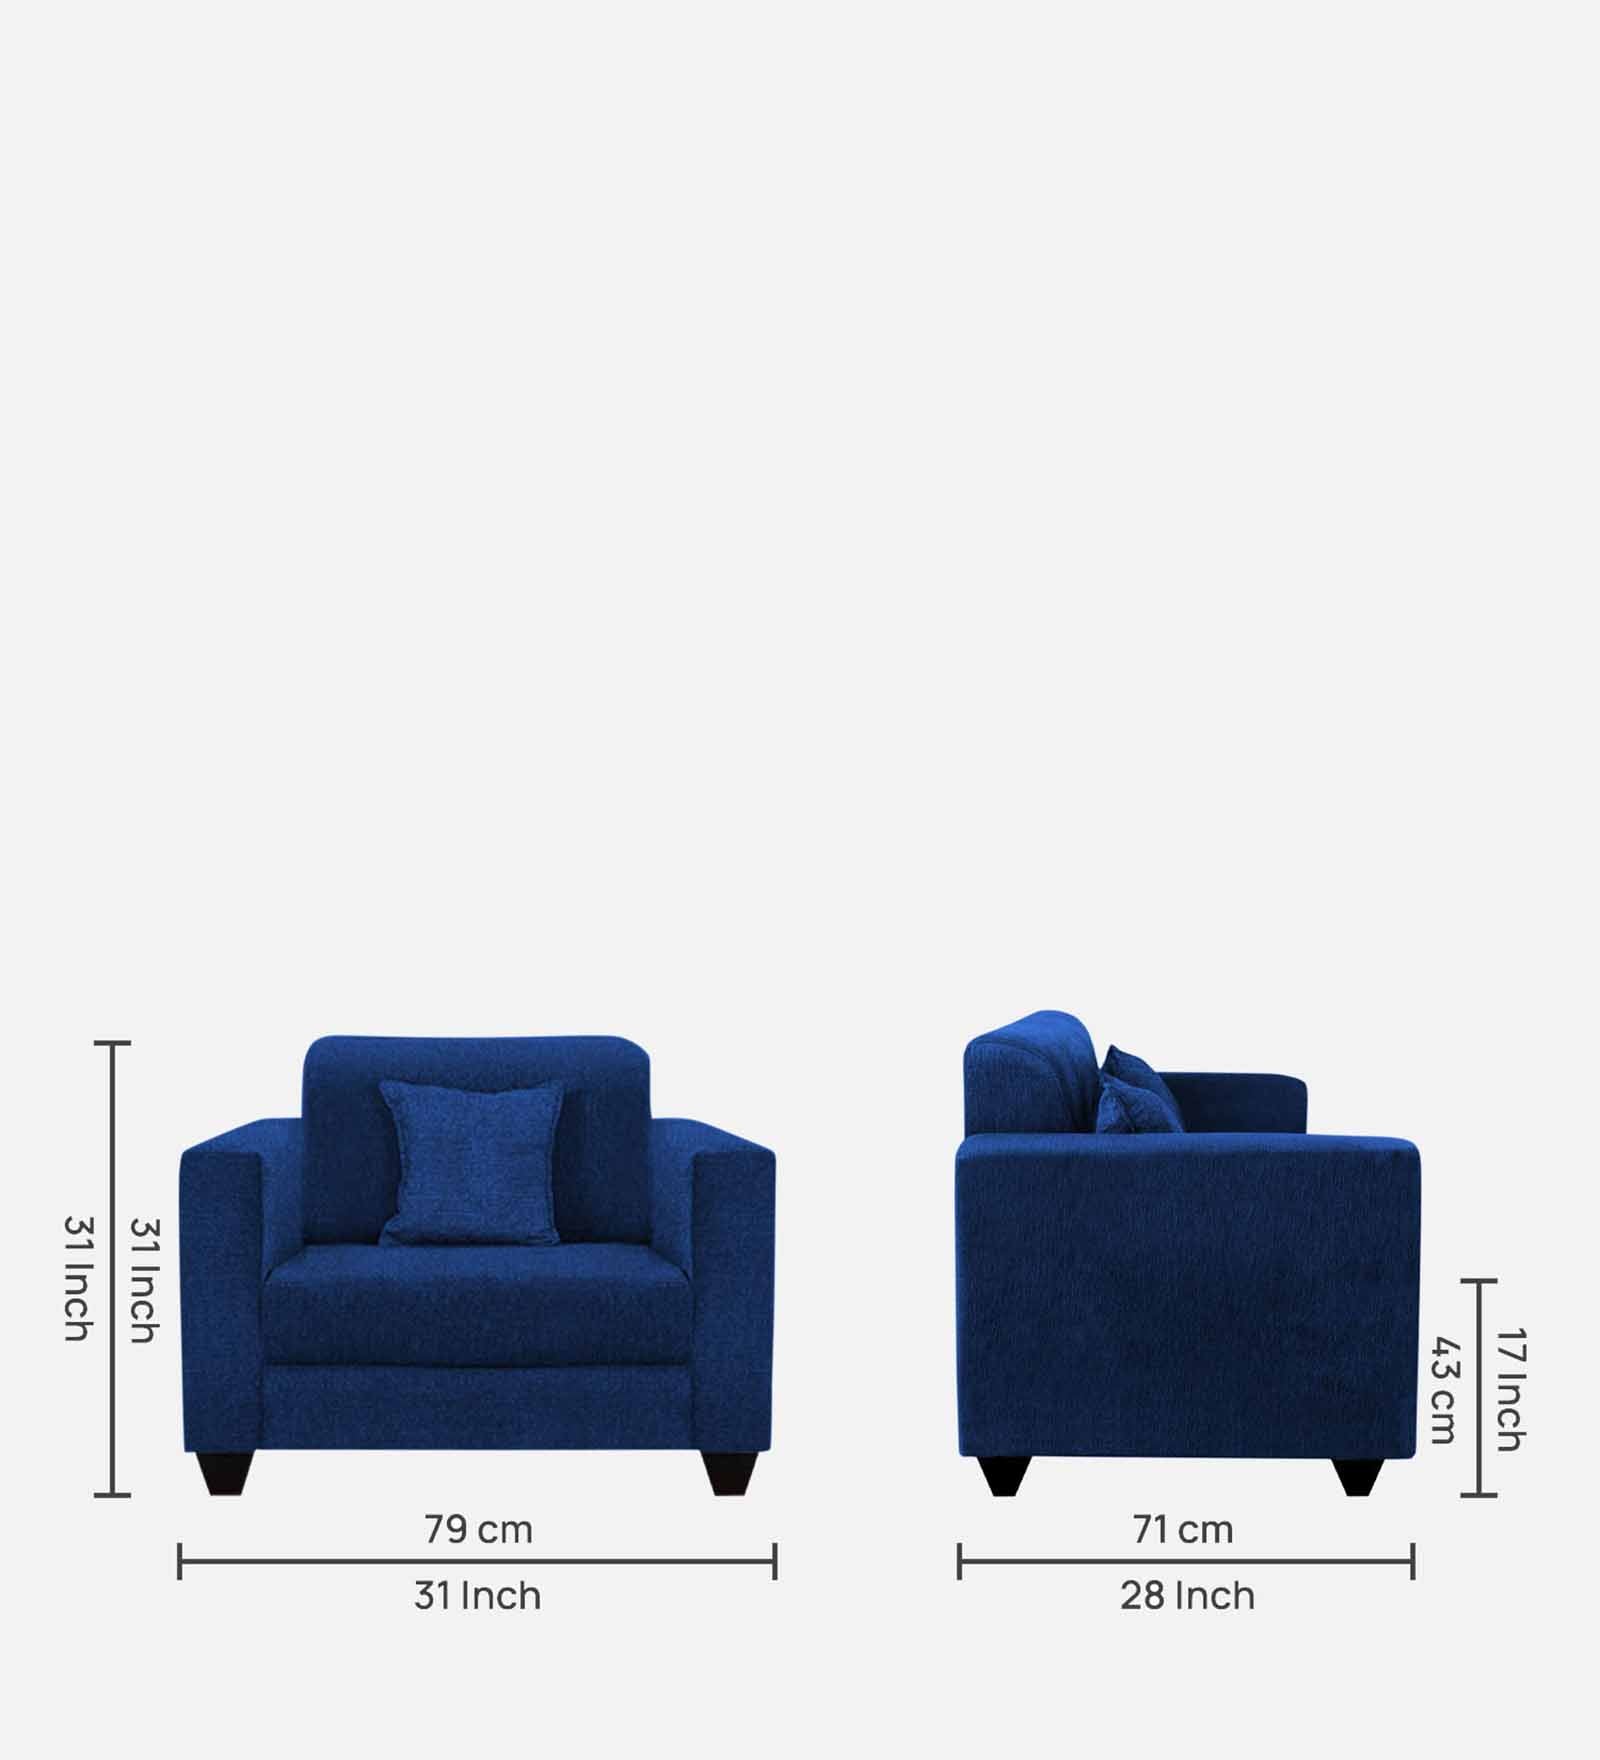 Nebula Fabric 1 Seater Sofa in Royal Blue Colour